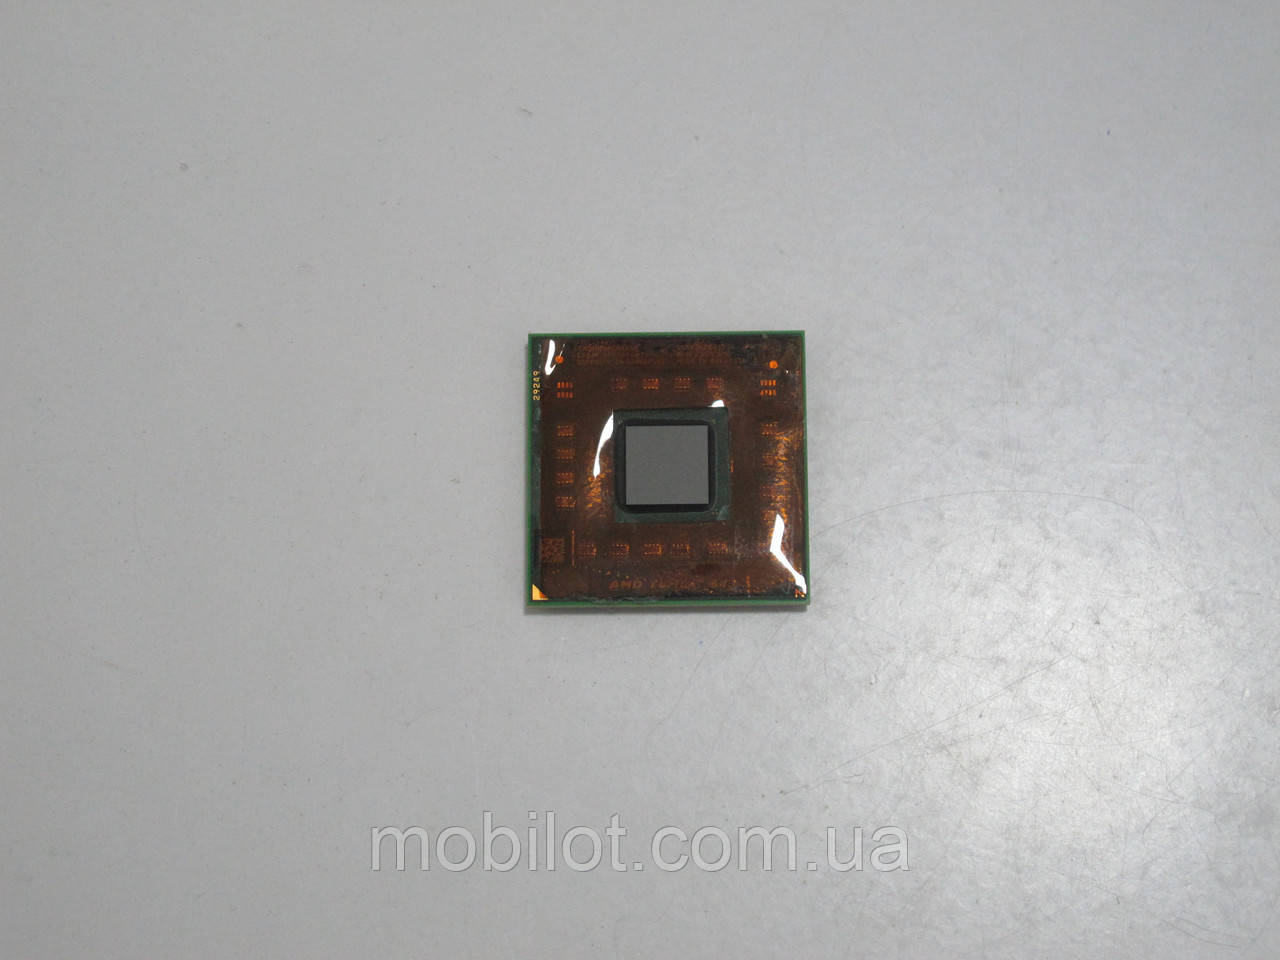 Процессор AMD Turion 64 MK-36 (NZ-5879) 